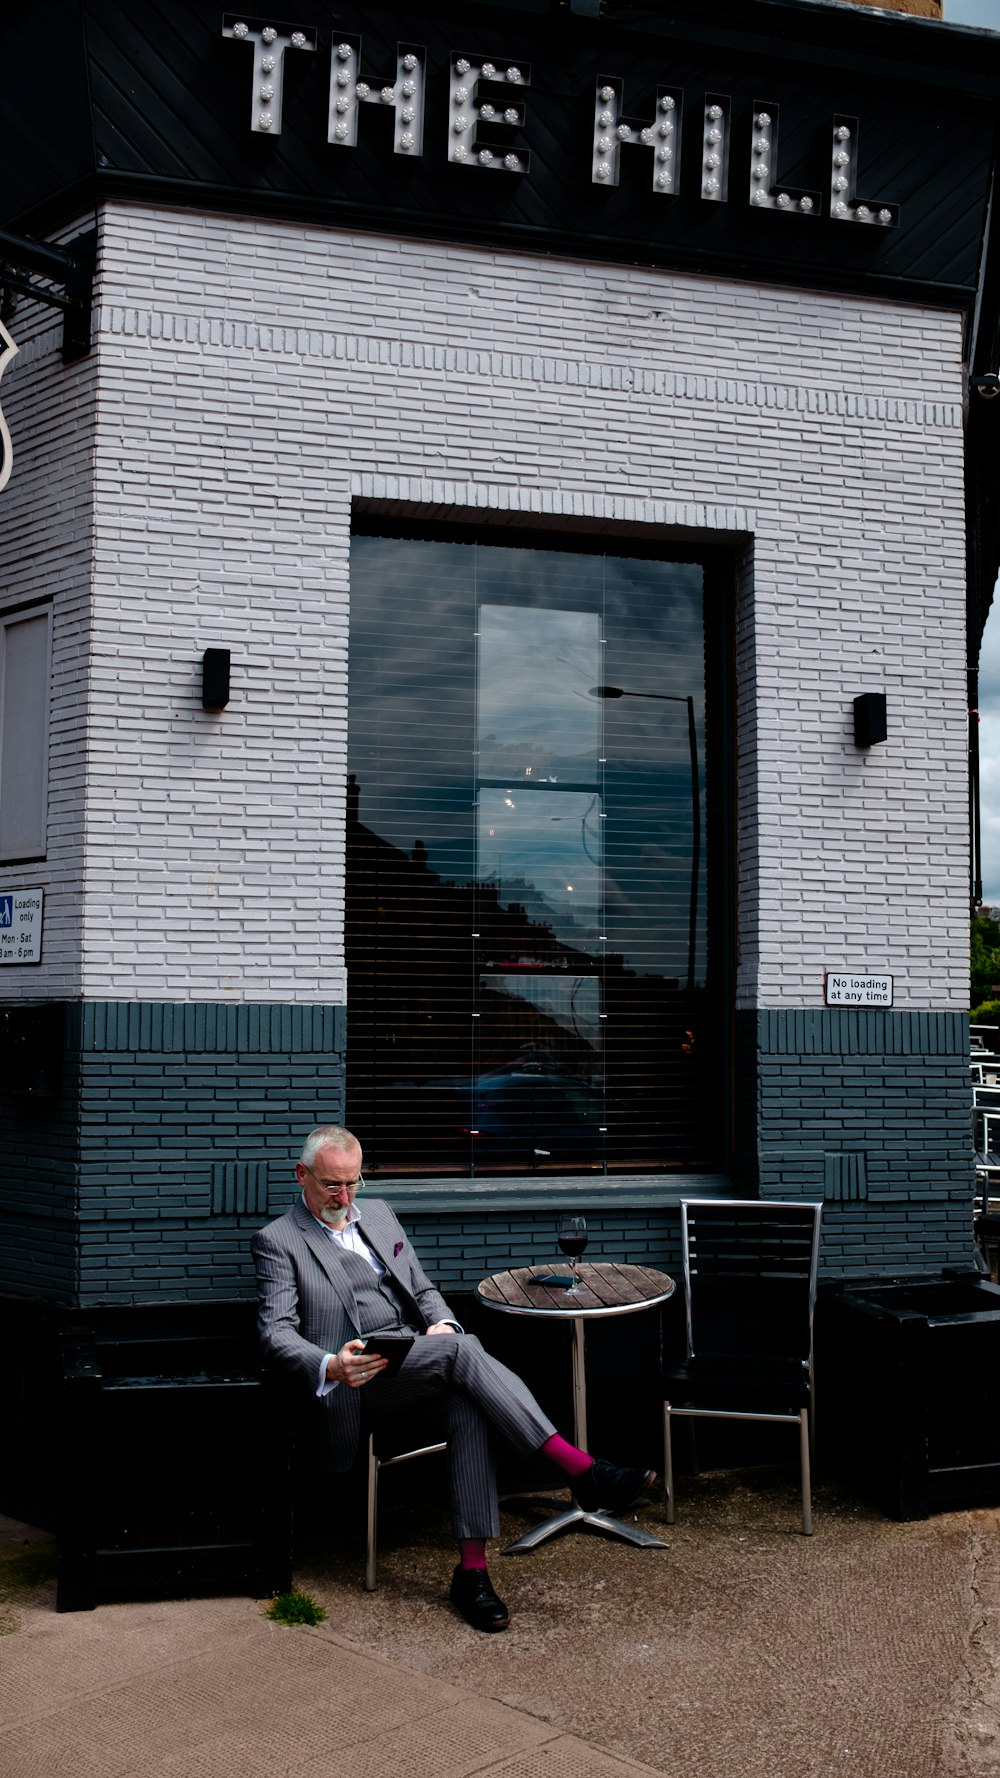 ザ・ヒルの建物の前のテーブルの横の椅子に座るグレーのスーツを着た男性